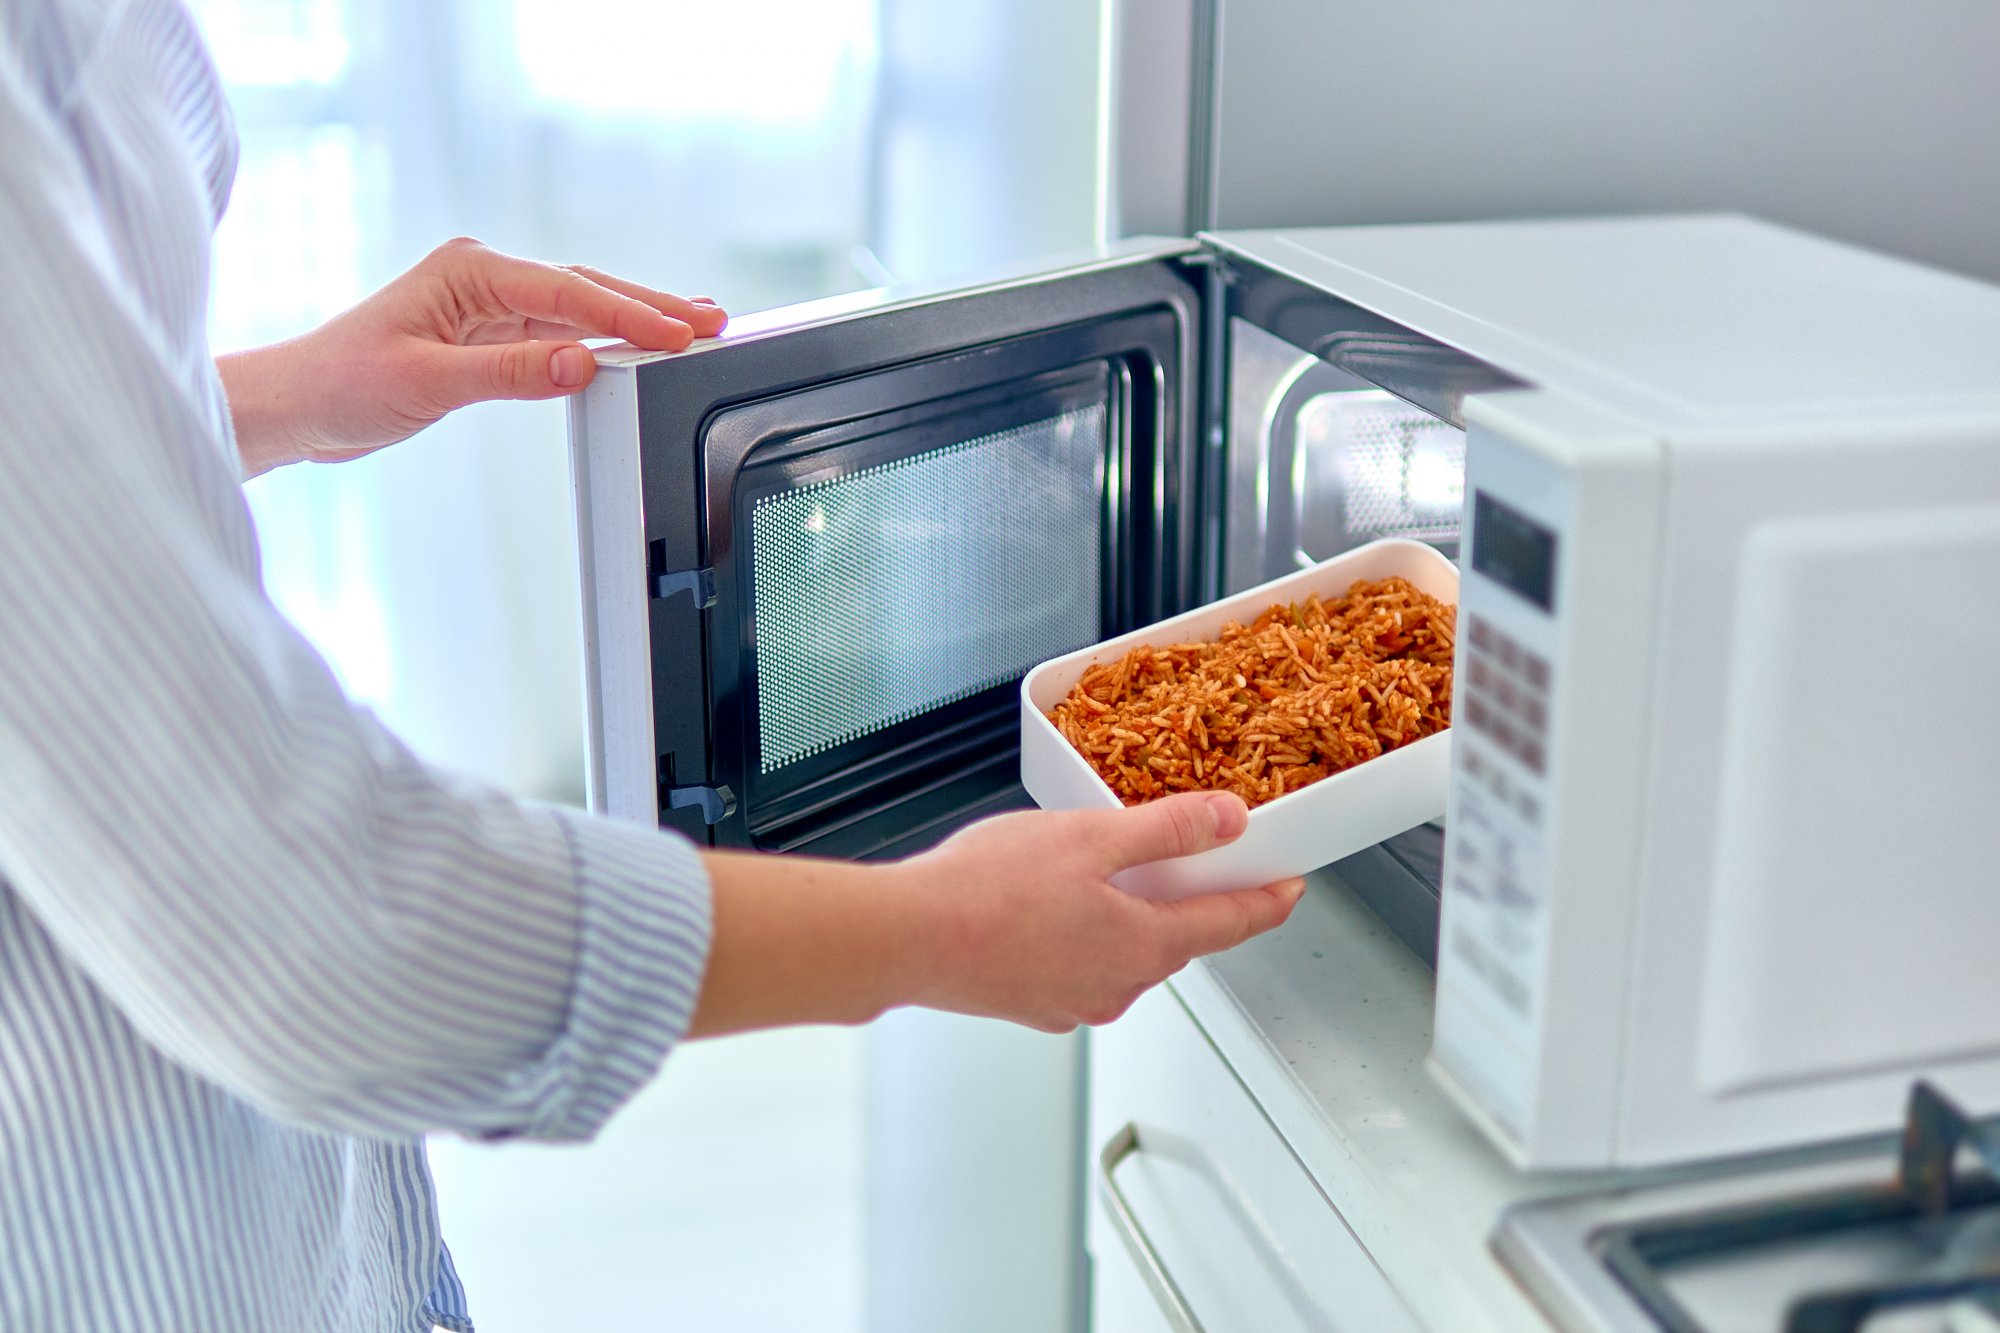 Влияние свч. Микроволновая печь с едой. Контейнер для разогрева еды в микроволновке. Выключать СВЧ печь. Исследование еды из микроволновки.